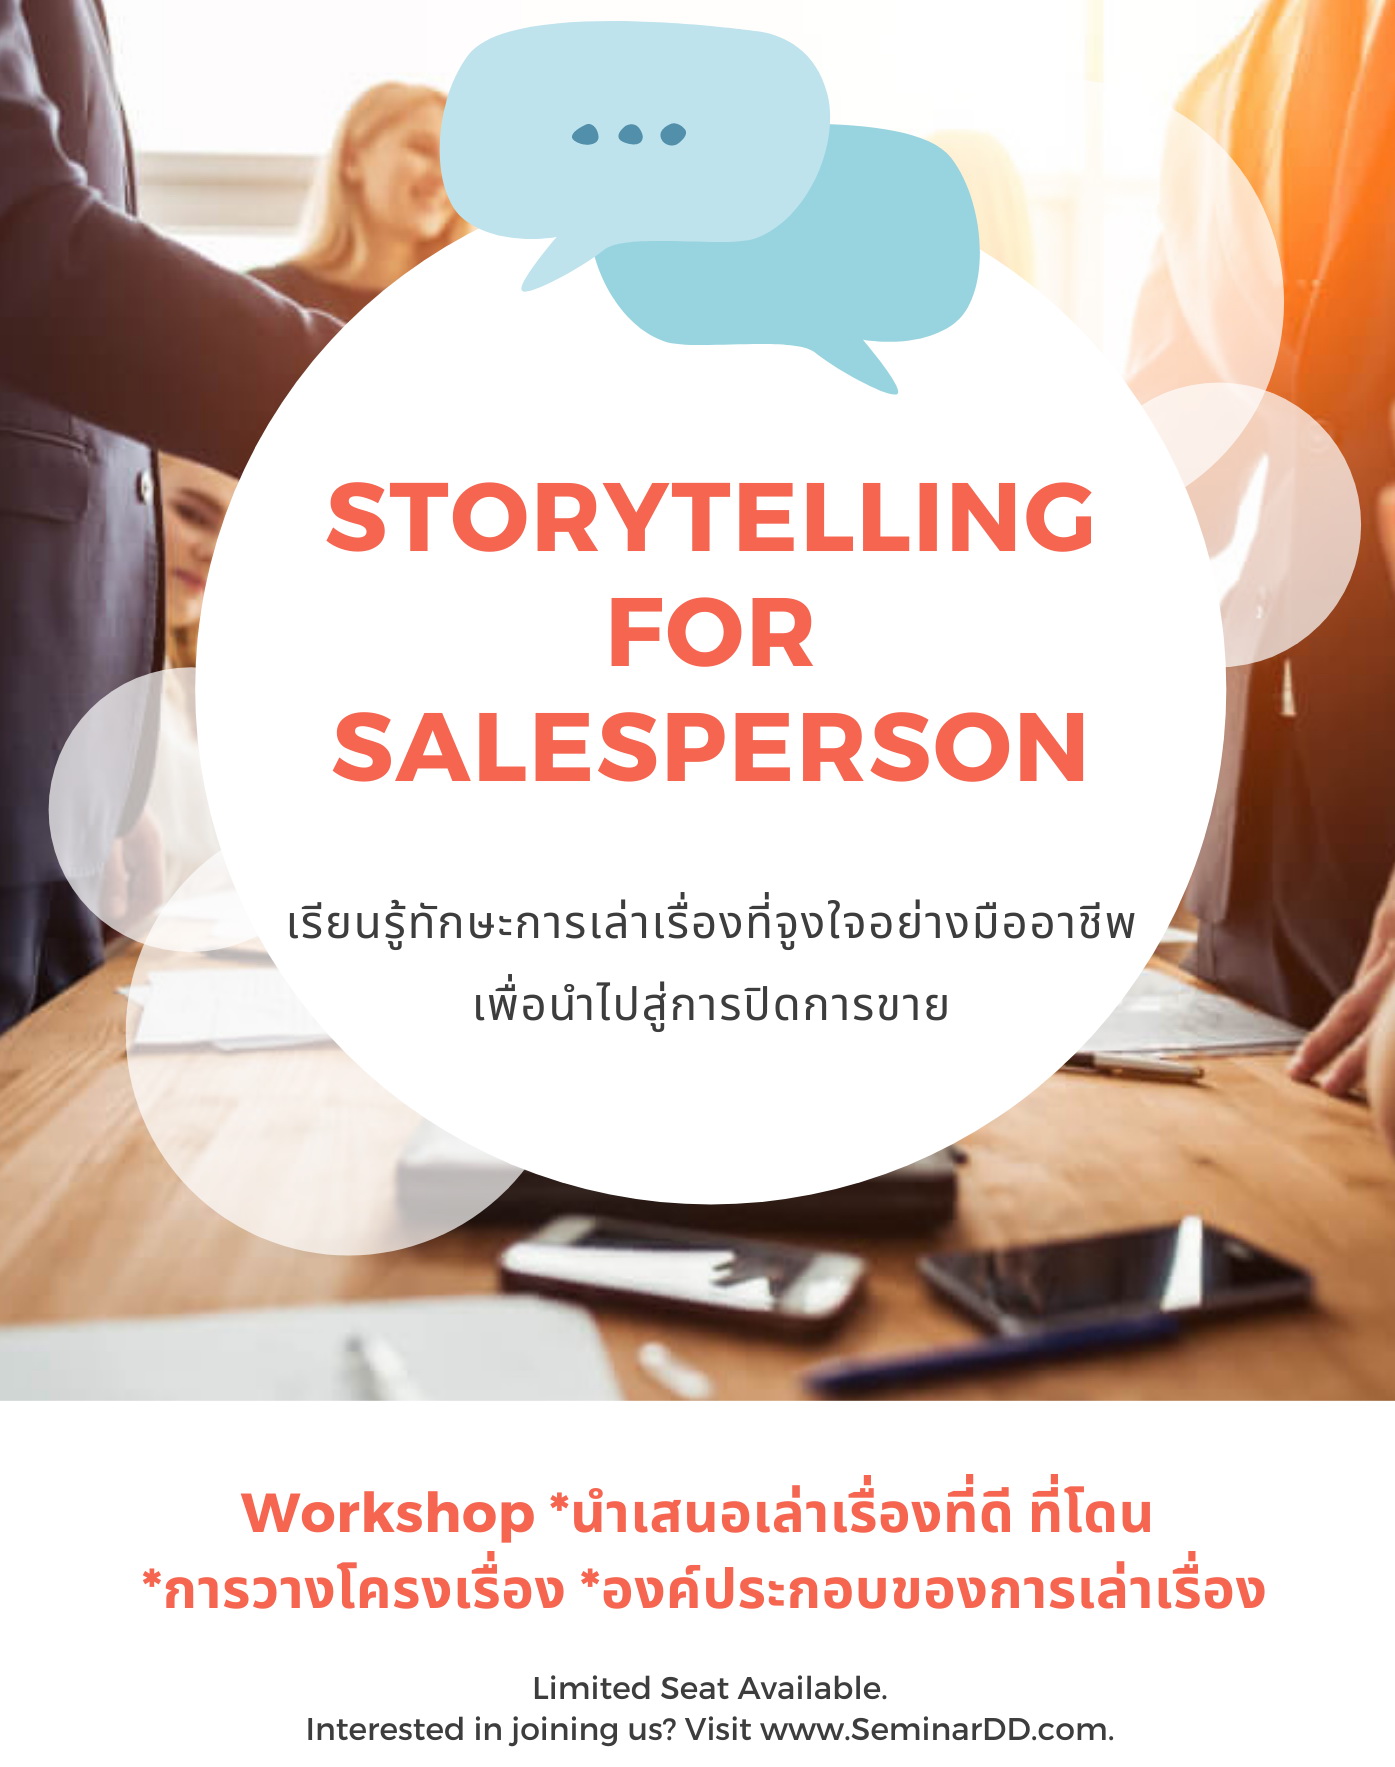 การเล่าเรื่องสำหรับนักขาย (Storytelling for Salesperson)